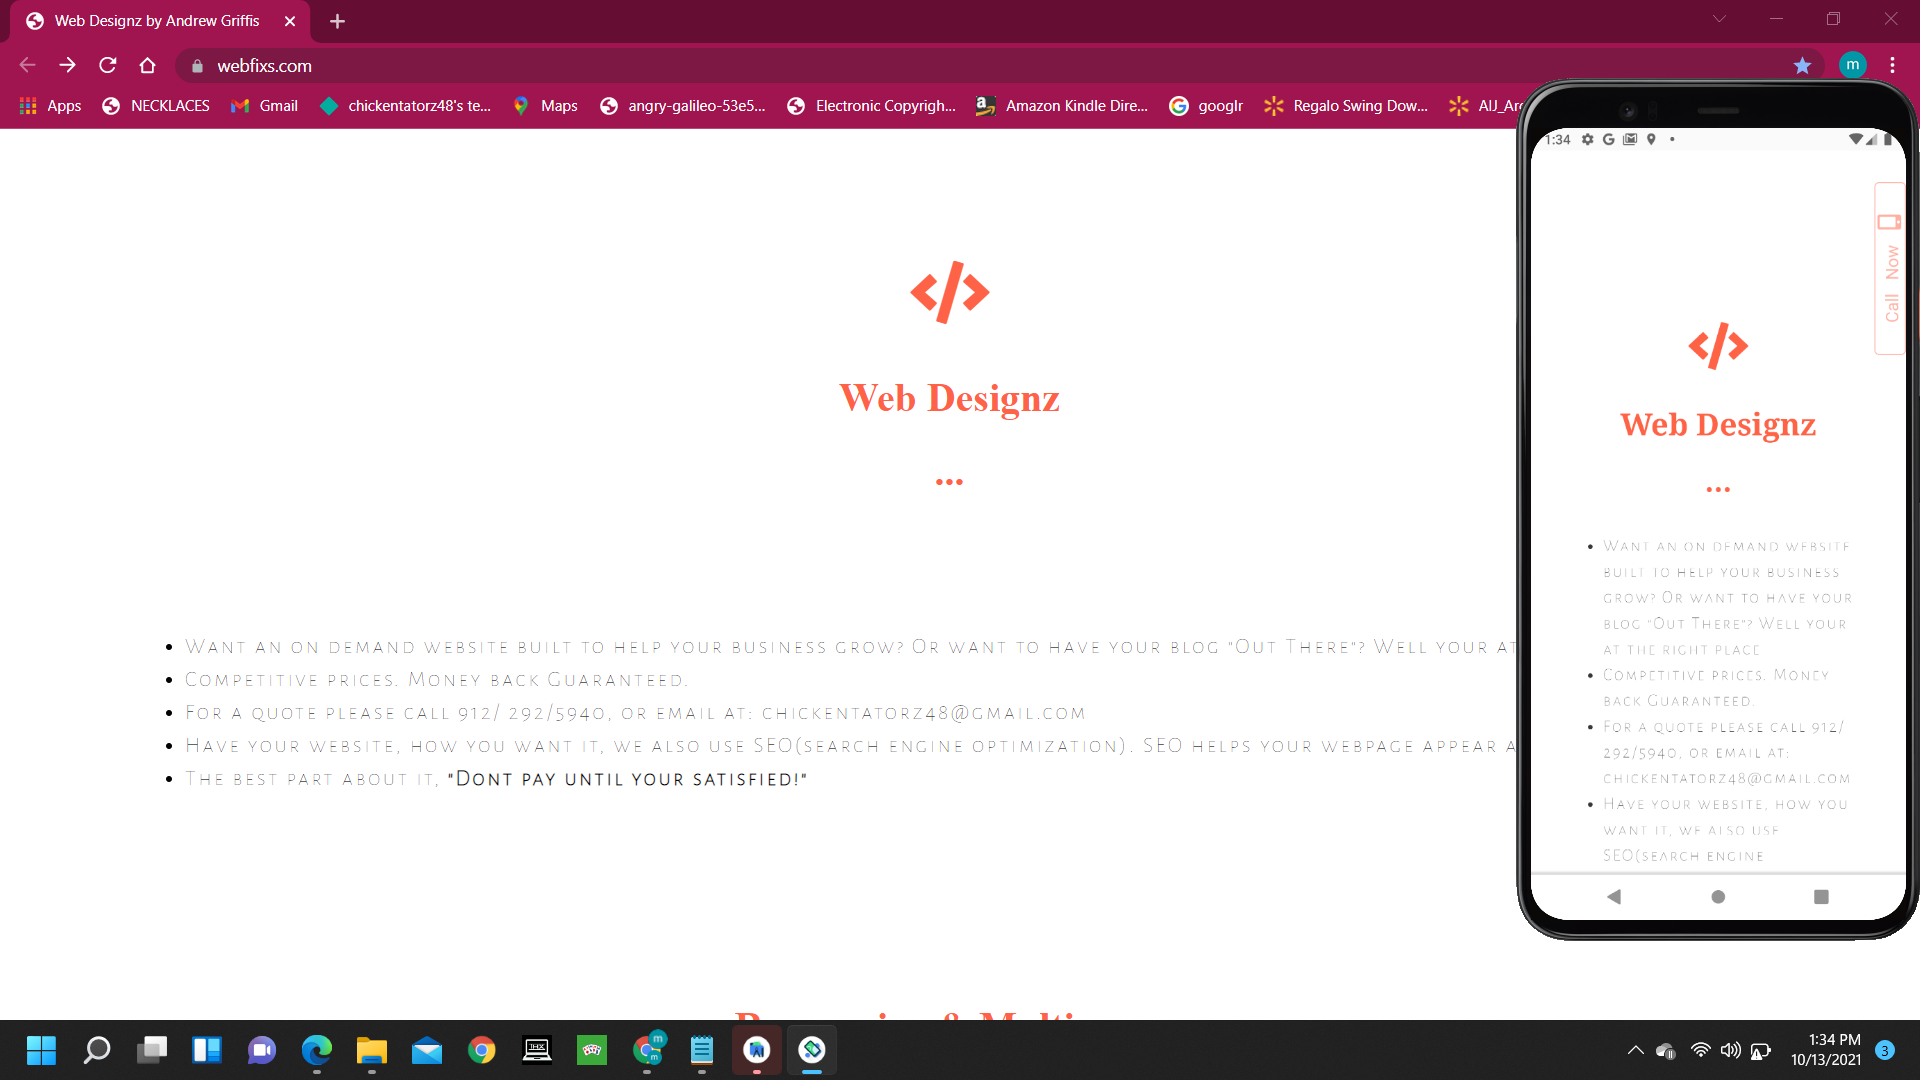 webfixs.com